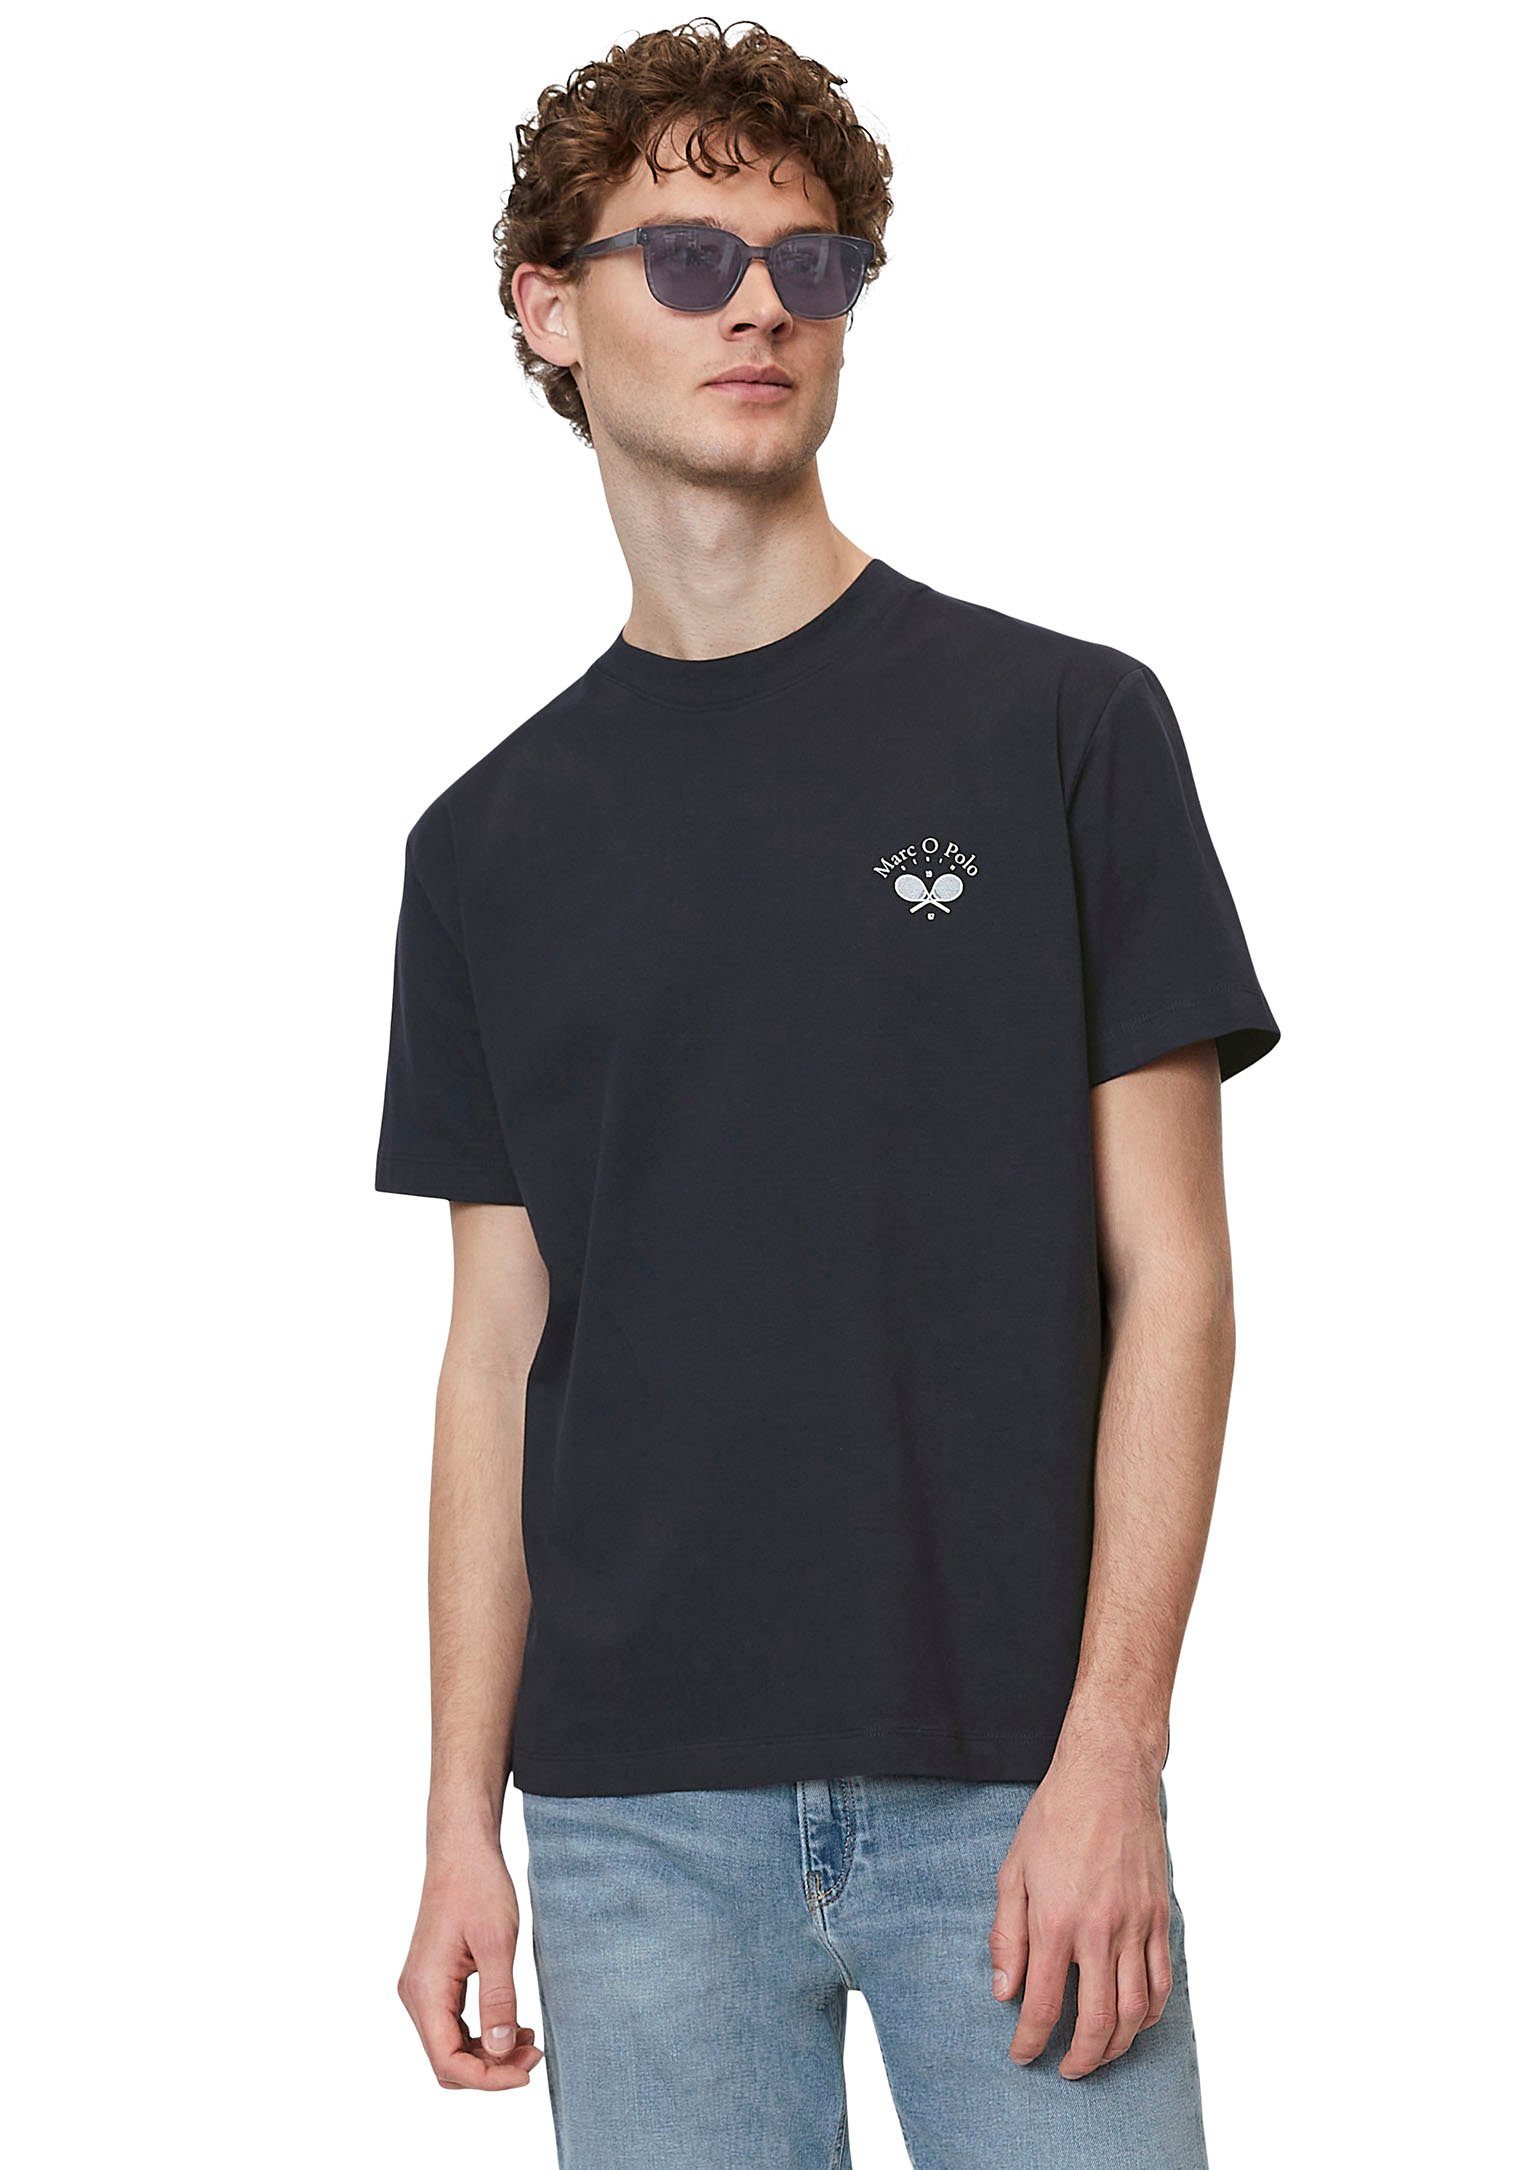 Marc O'Polo DENIM T-Shirt mit sportlichem Print in Brusthöhe marineblau